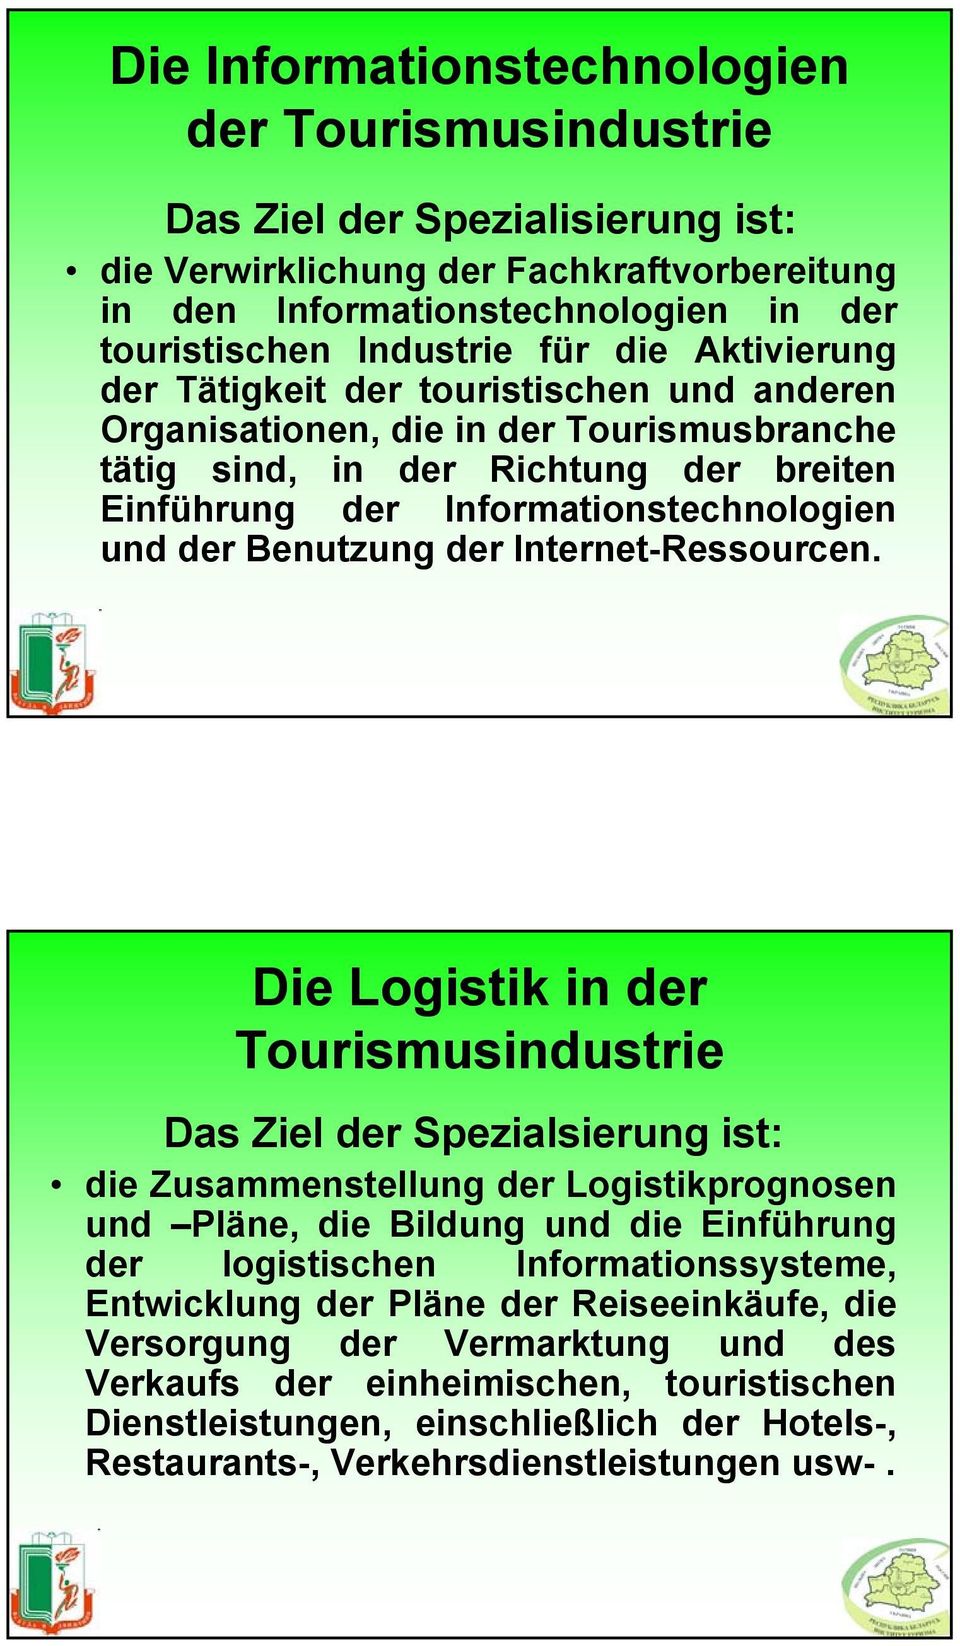 Die Logistik in der Tourismusindustrie Das Ziel der Spezialsierung ist: die Zusammenstellung der Logistikprognosen und Pläne, die Bildung und die Einführung der logistischen Informationssysteme,